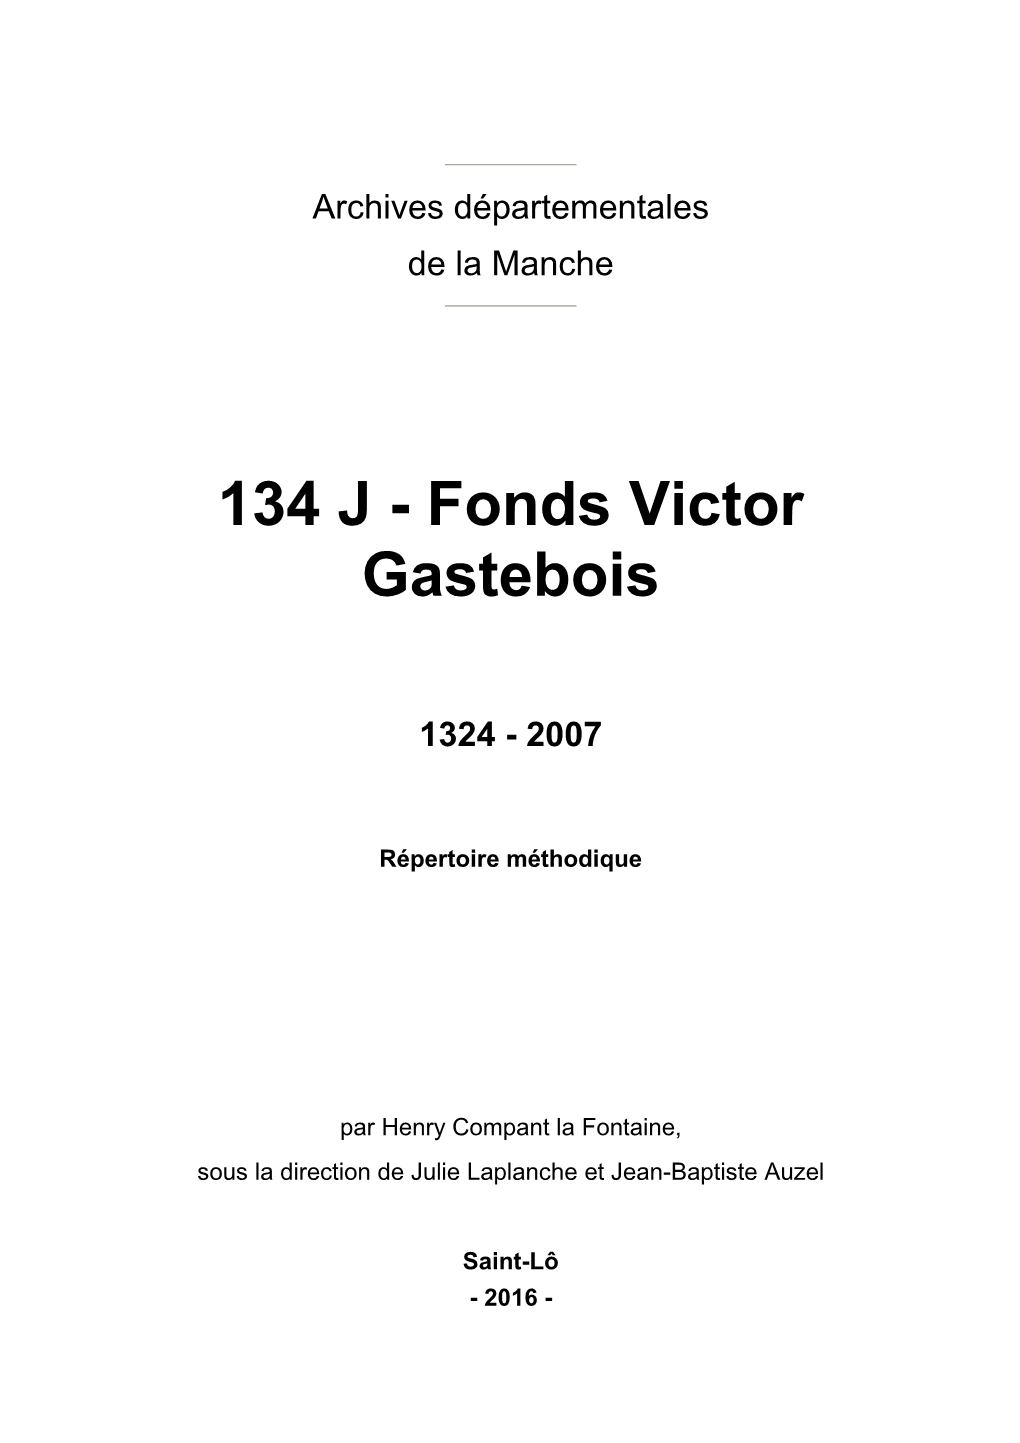 134 J - Fonds Victor Gastebois